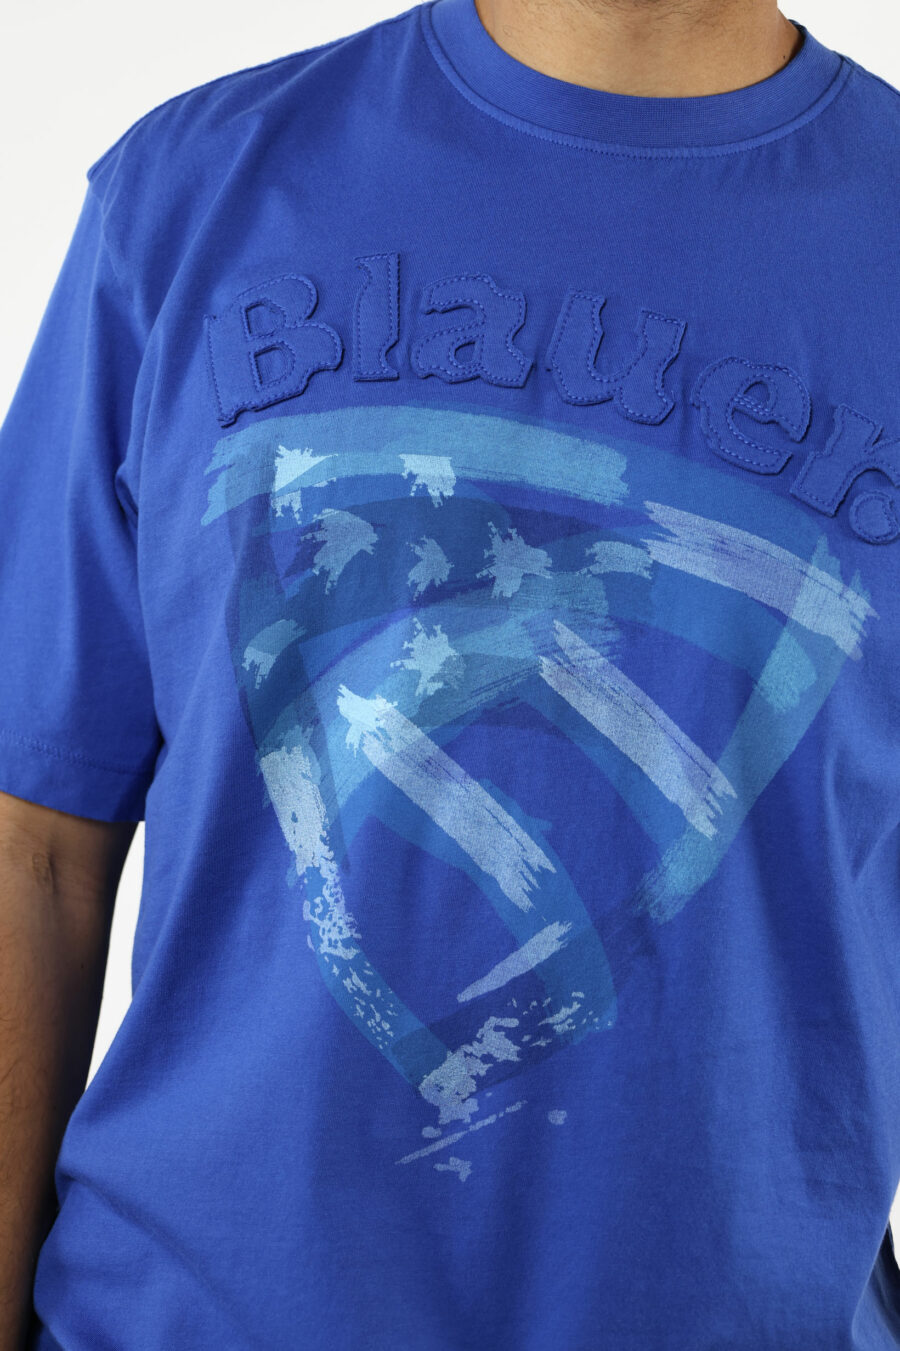 Blaues T-Shirt mit getragenem Schild Maxilogo - 111144